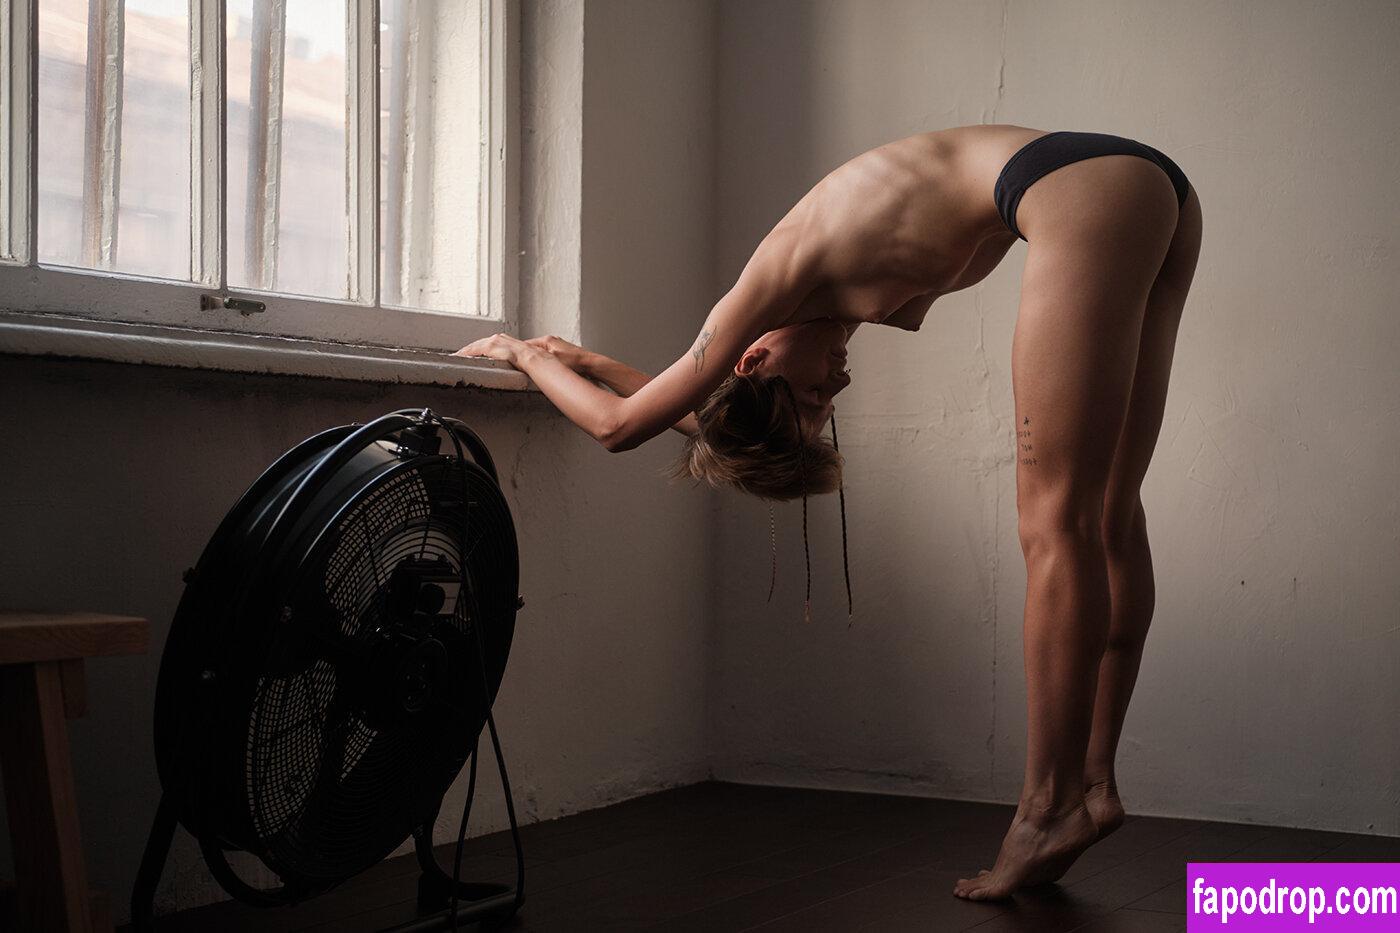 Alisa Volkova / A_Irrational / alisavolkova_art leak of nude photo #0013 from OnlyFans or Patreon